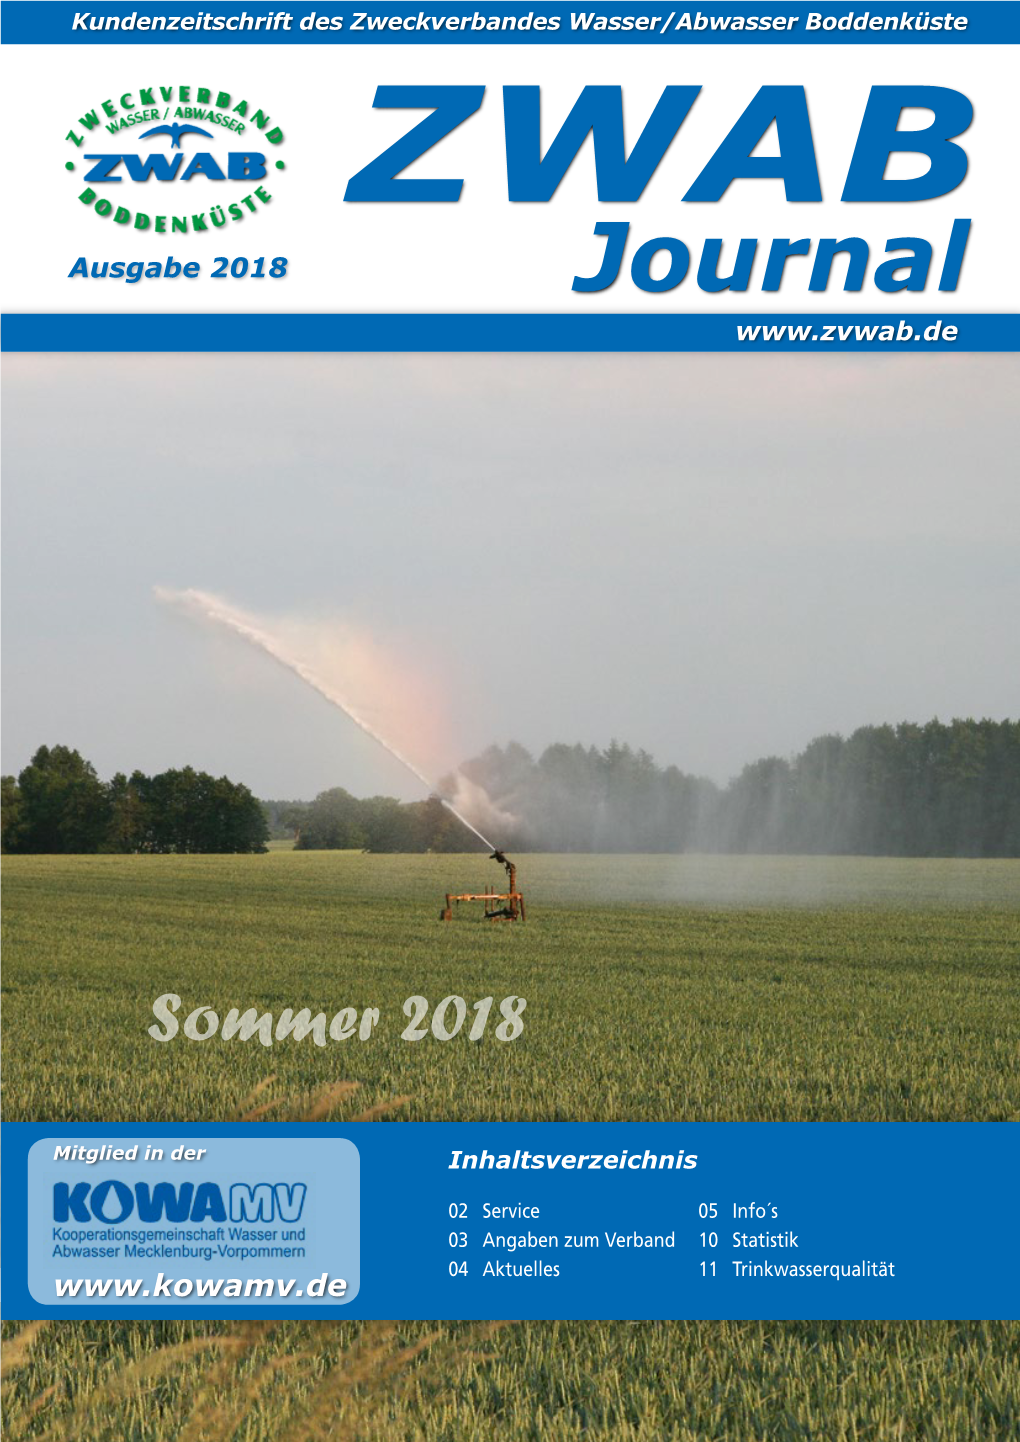 ZWAB Ausgabe 2018 Journal